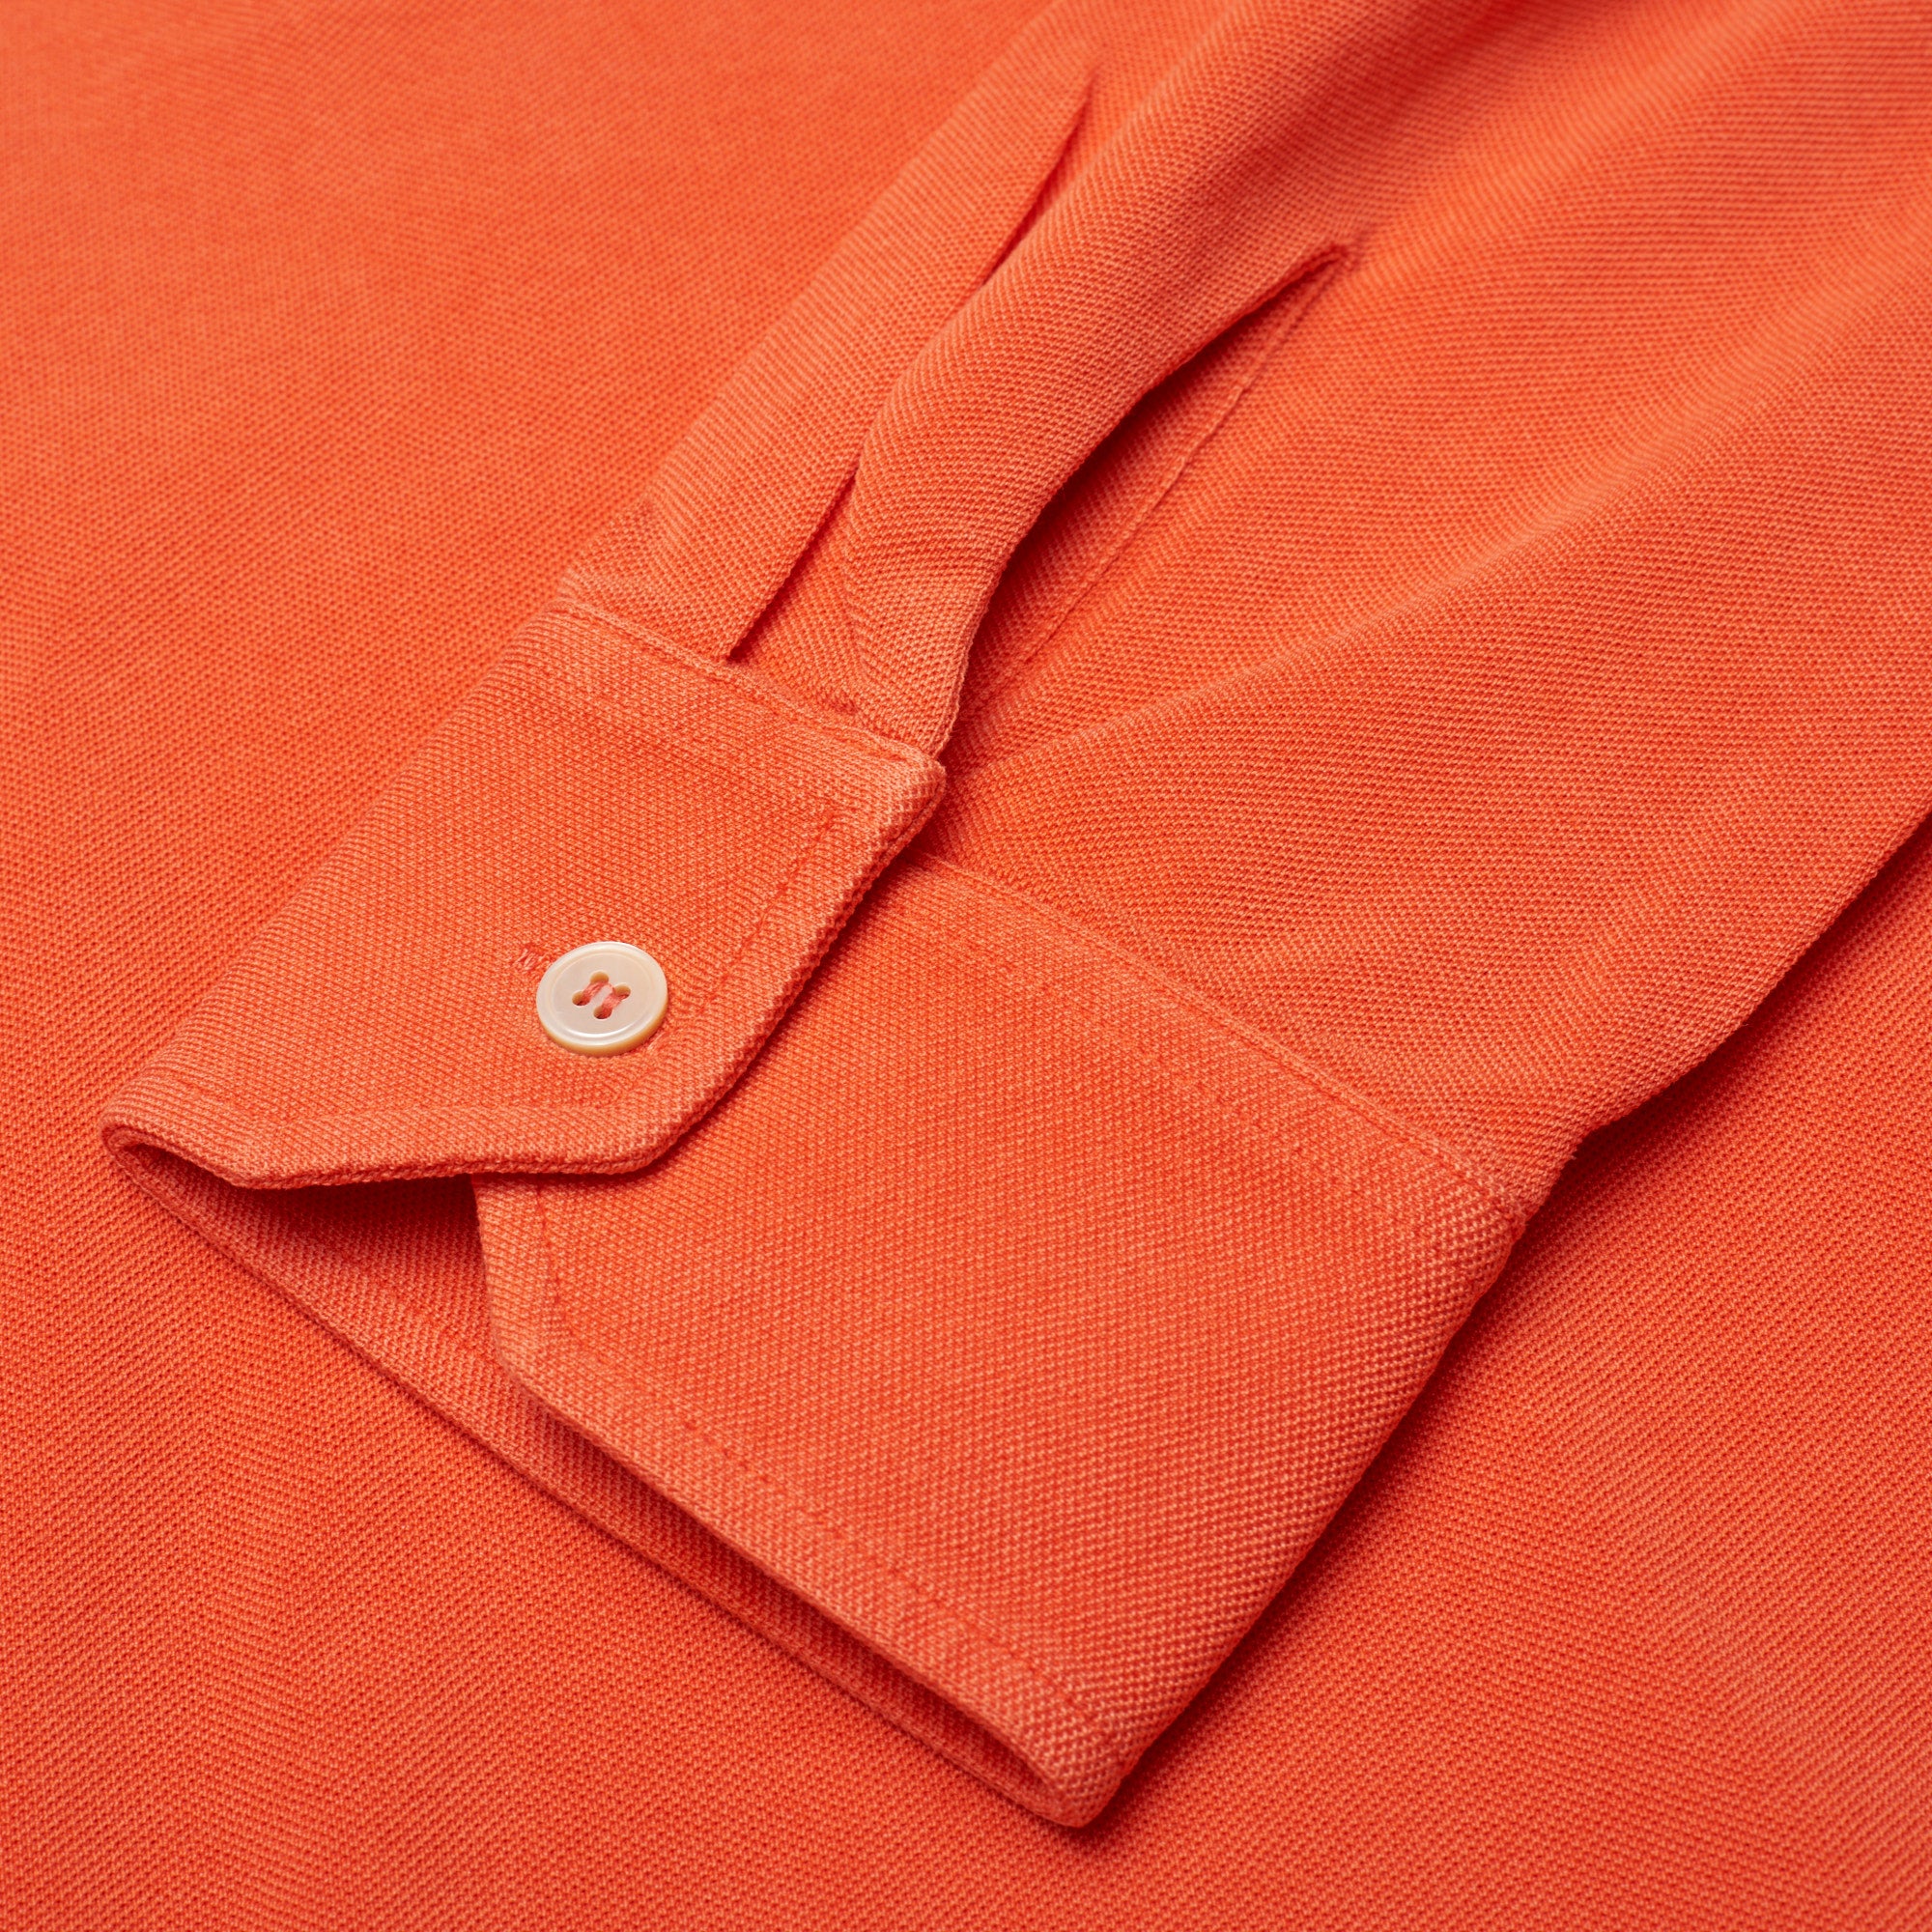 FEDELI "Goa" Orange Cotton Pique Long Sleeve Polo Shirt EU 50 NEW US M FEDELI